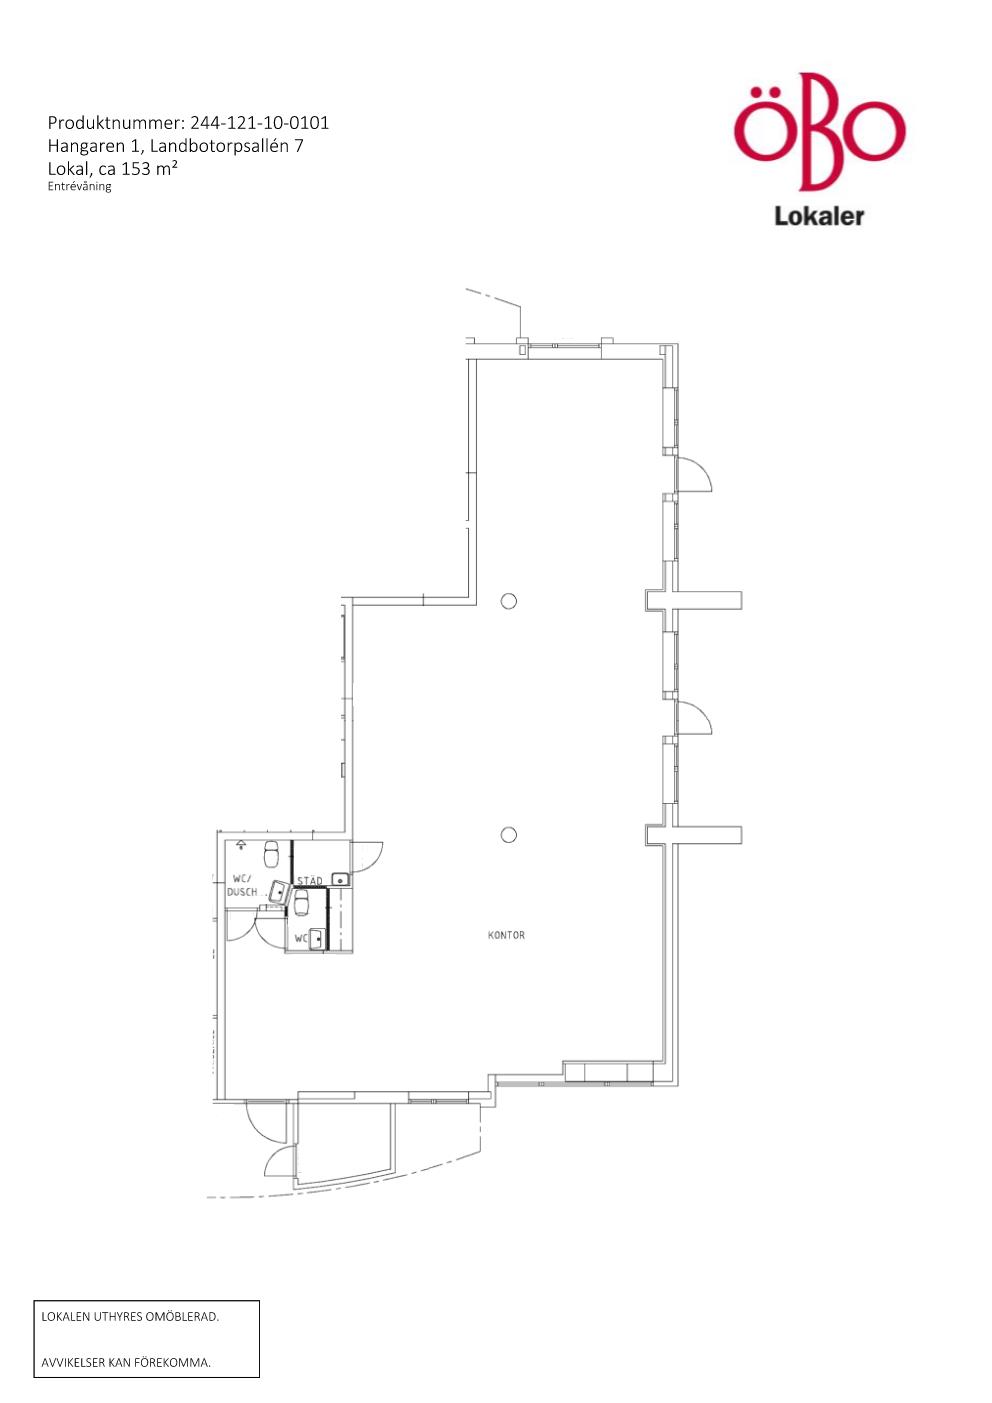 Planritning lokal på Landbotorpsallén 7, ett större kontorsrum med två små wc